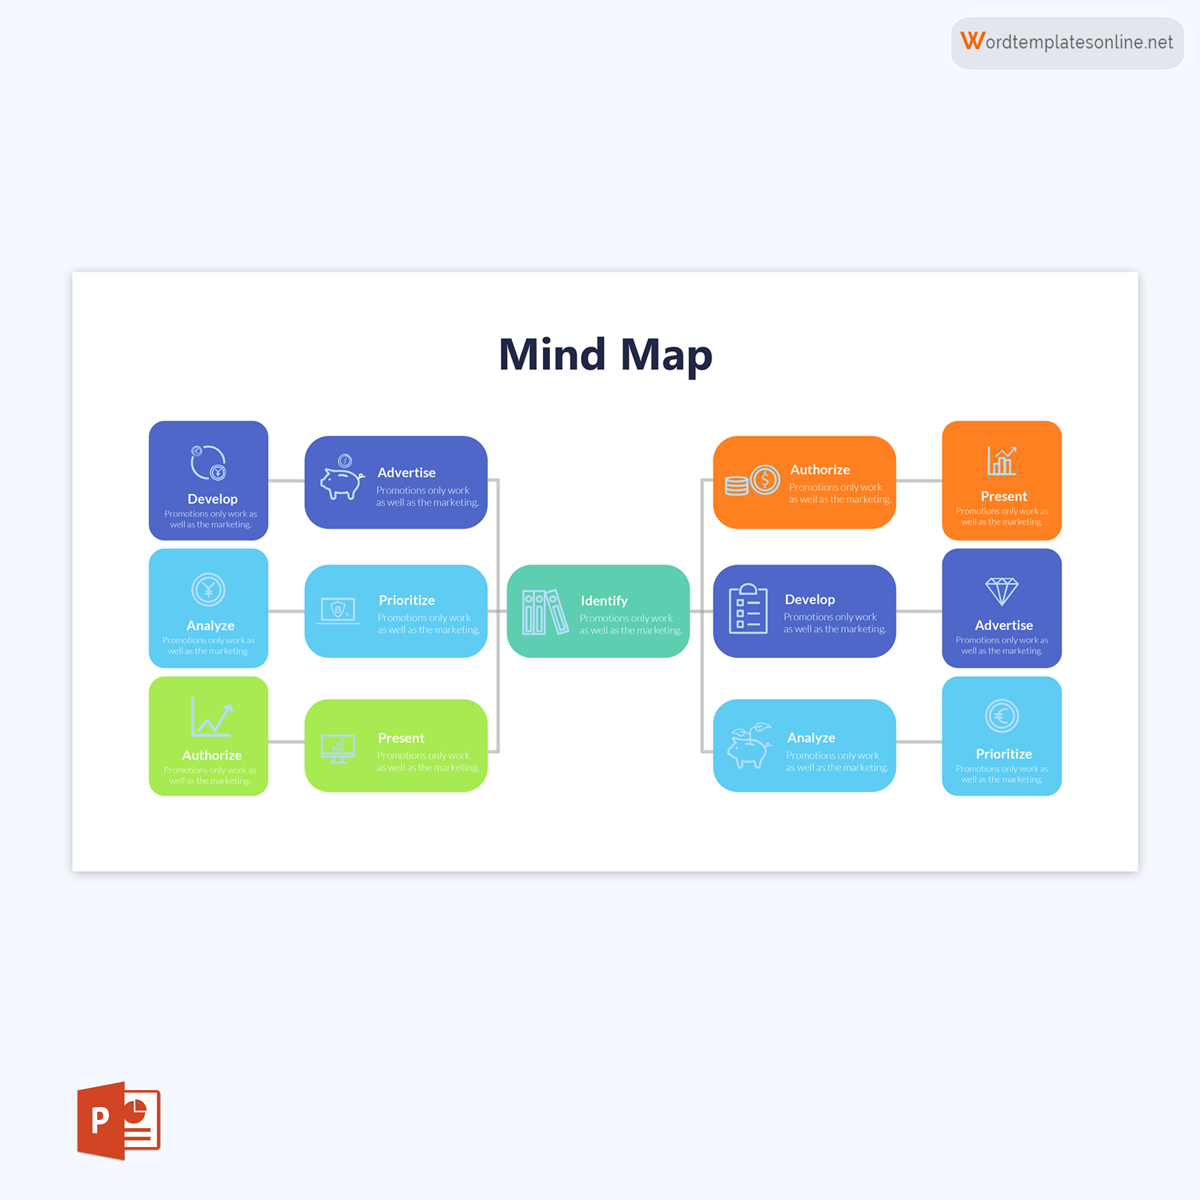 mind map maker